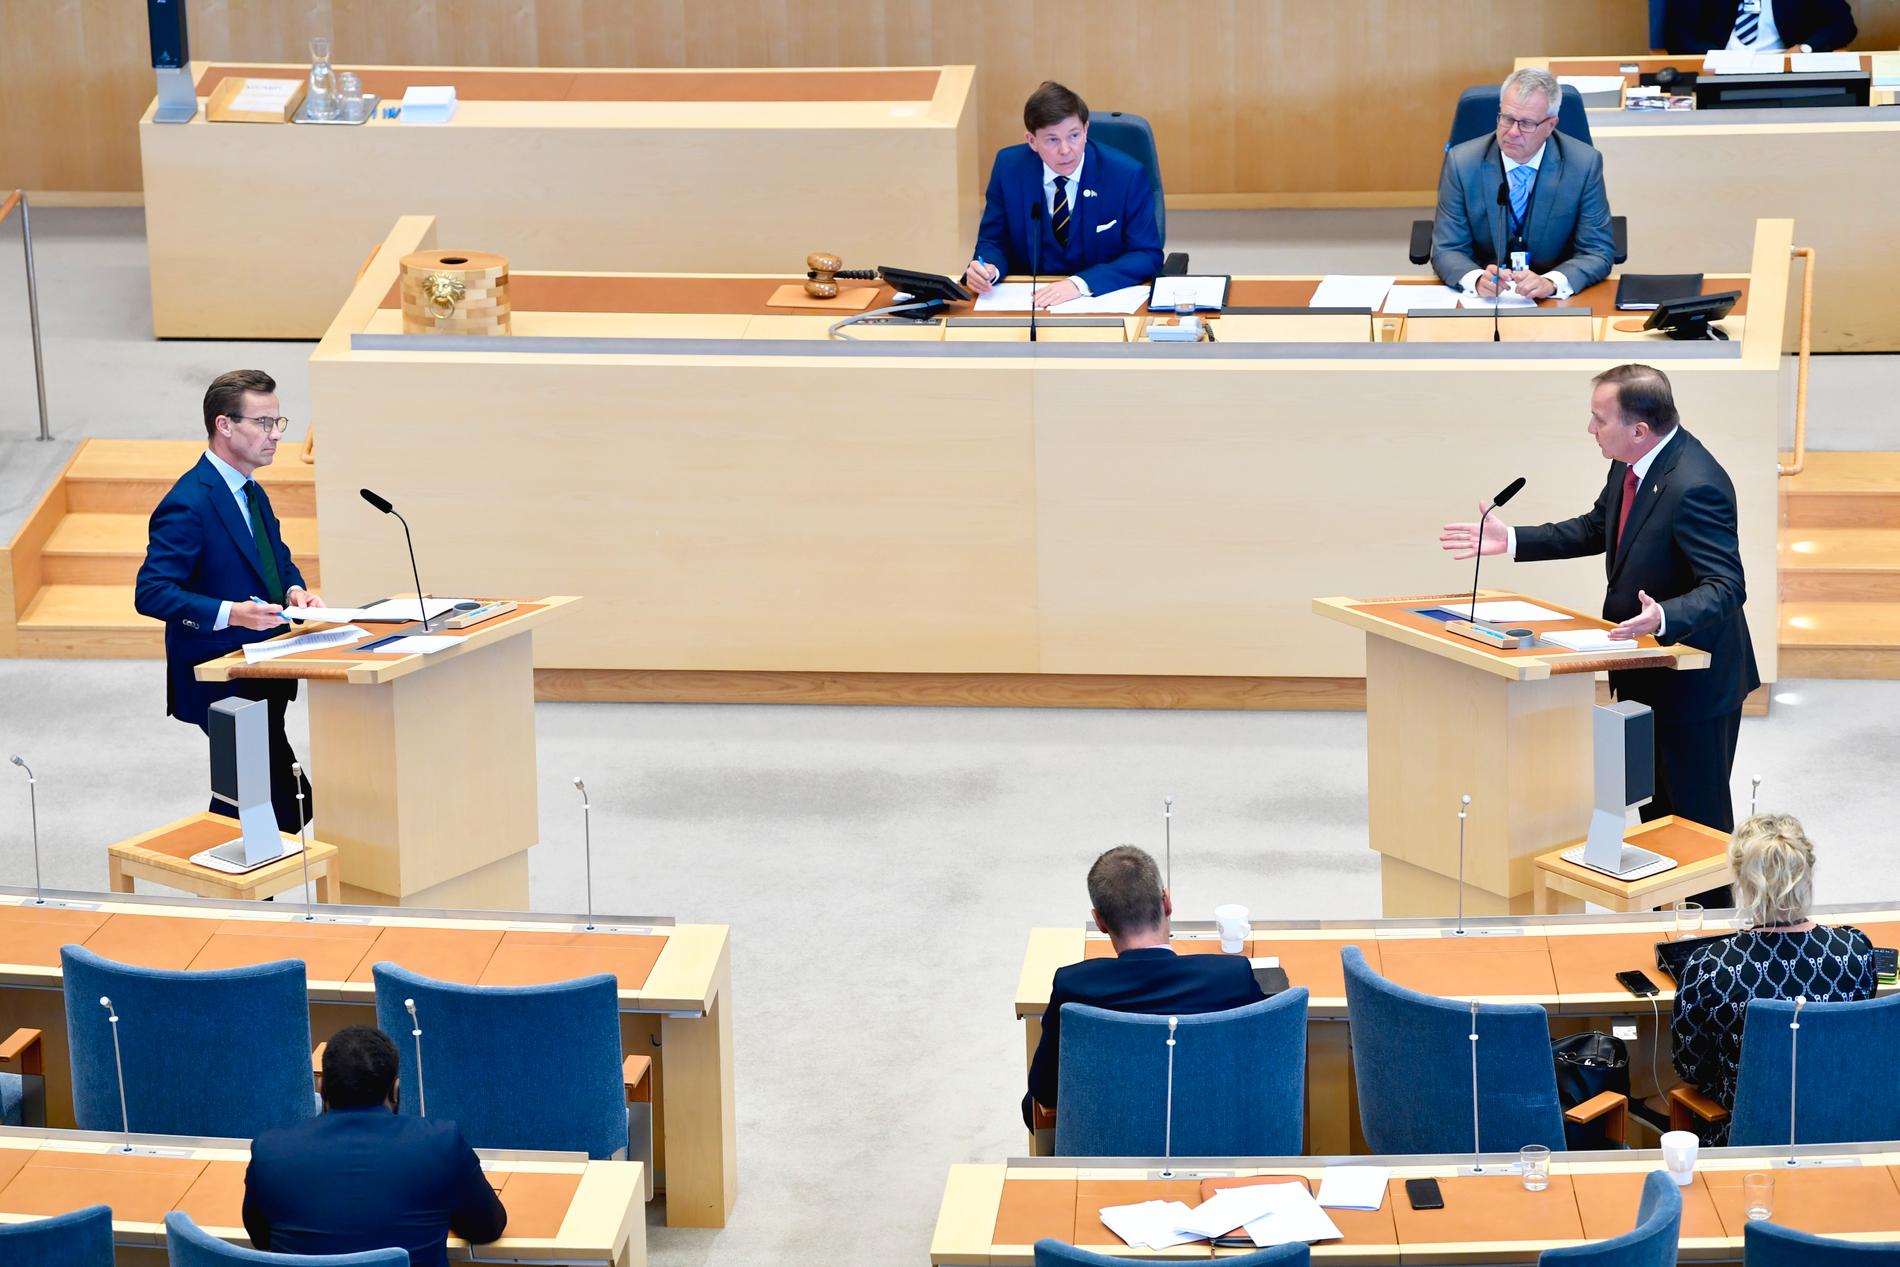 Den 18 november var det tänkt att partiledarna skulle debattera EU-frågor i riksdagen. Arkivbild.